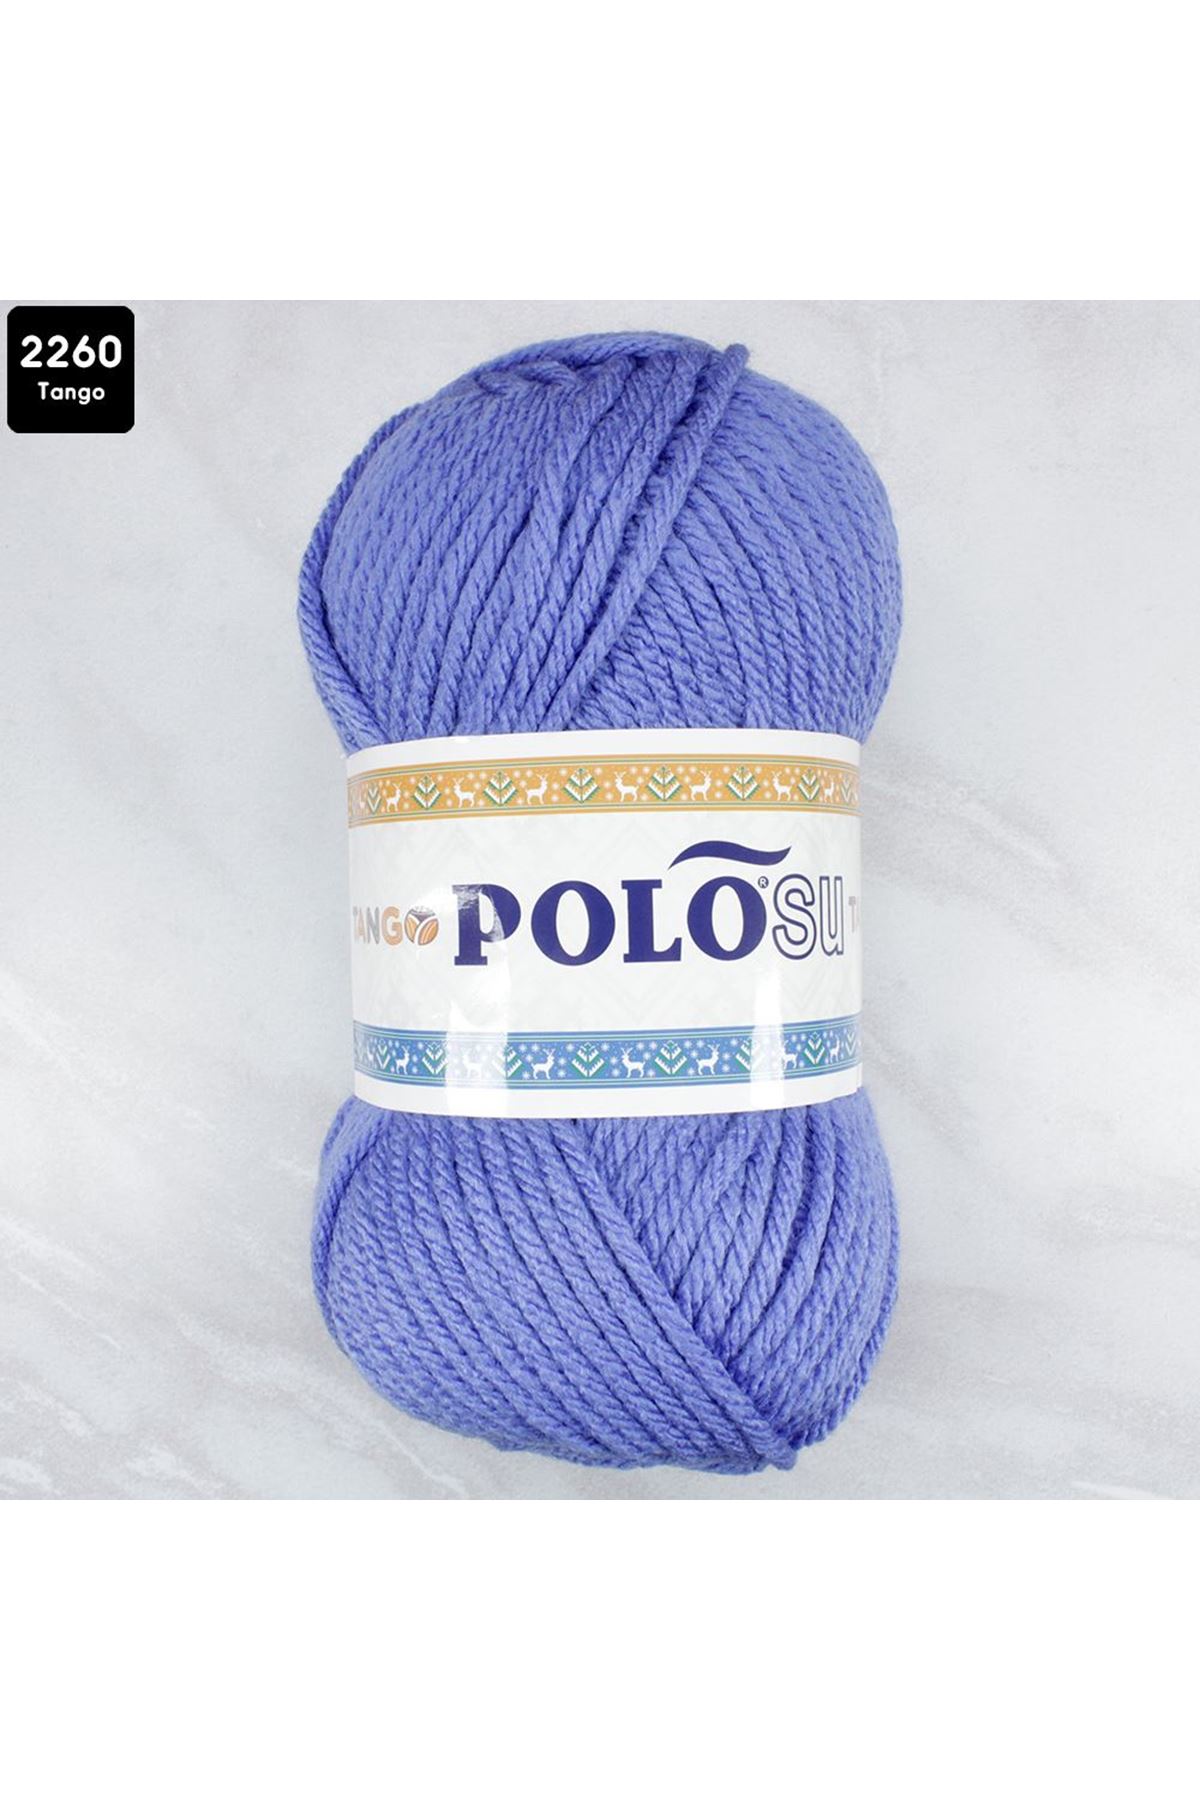 PoloSU Tango Renk No: 2260